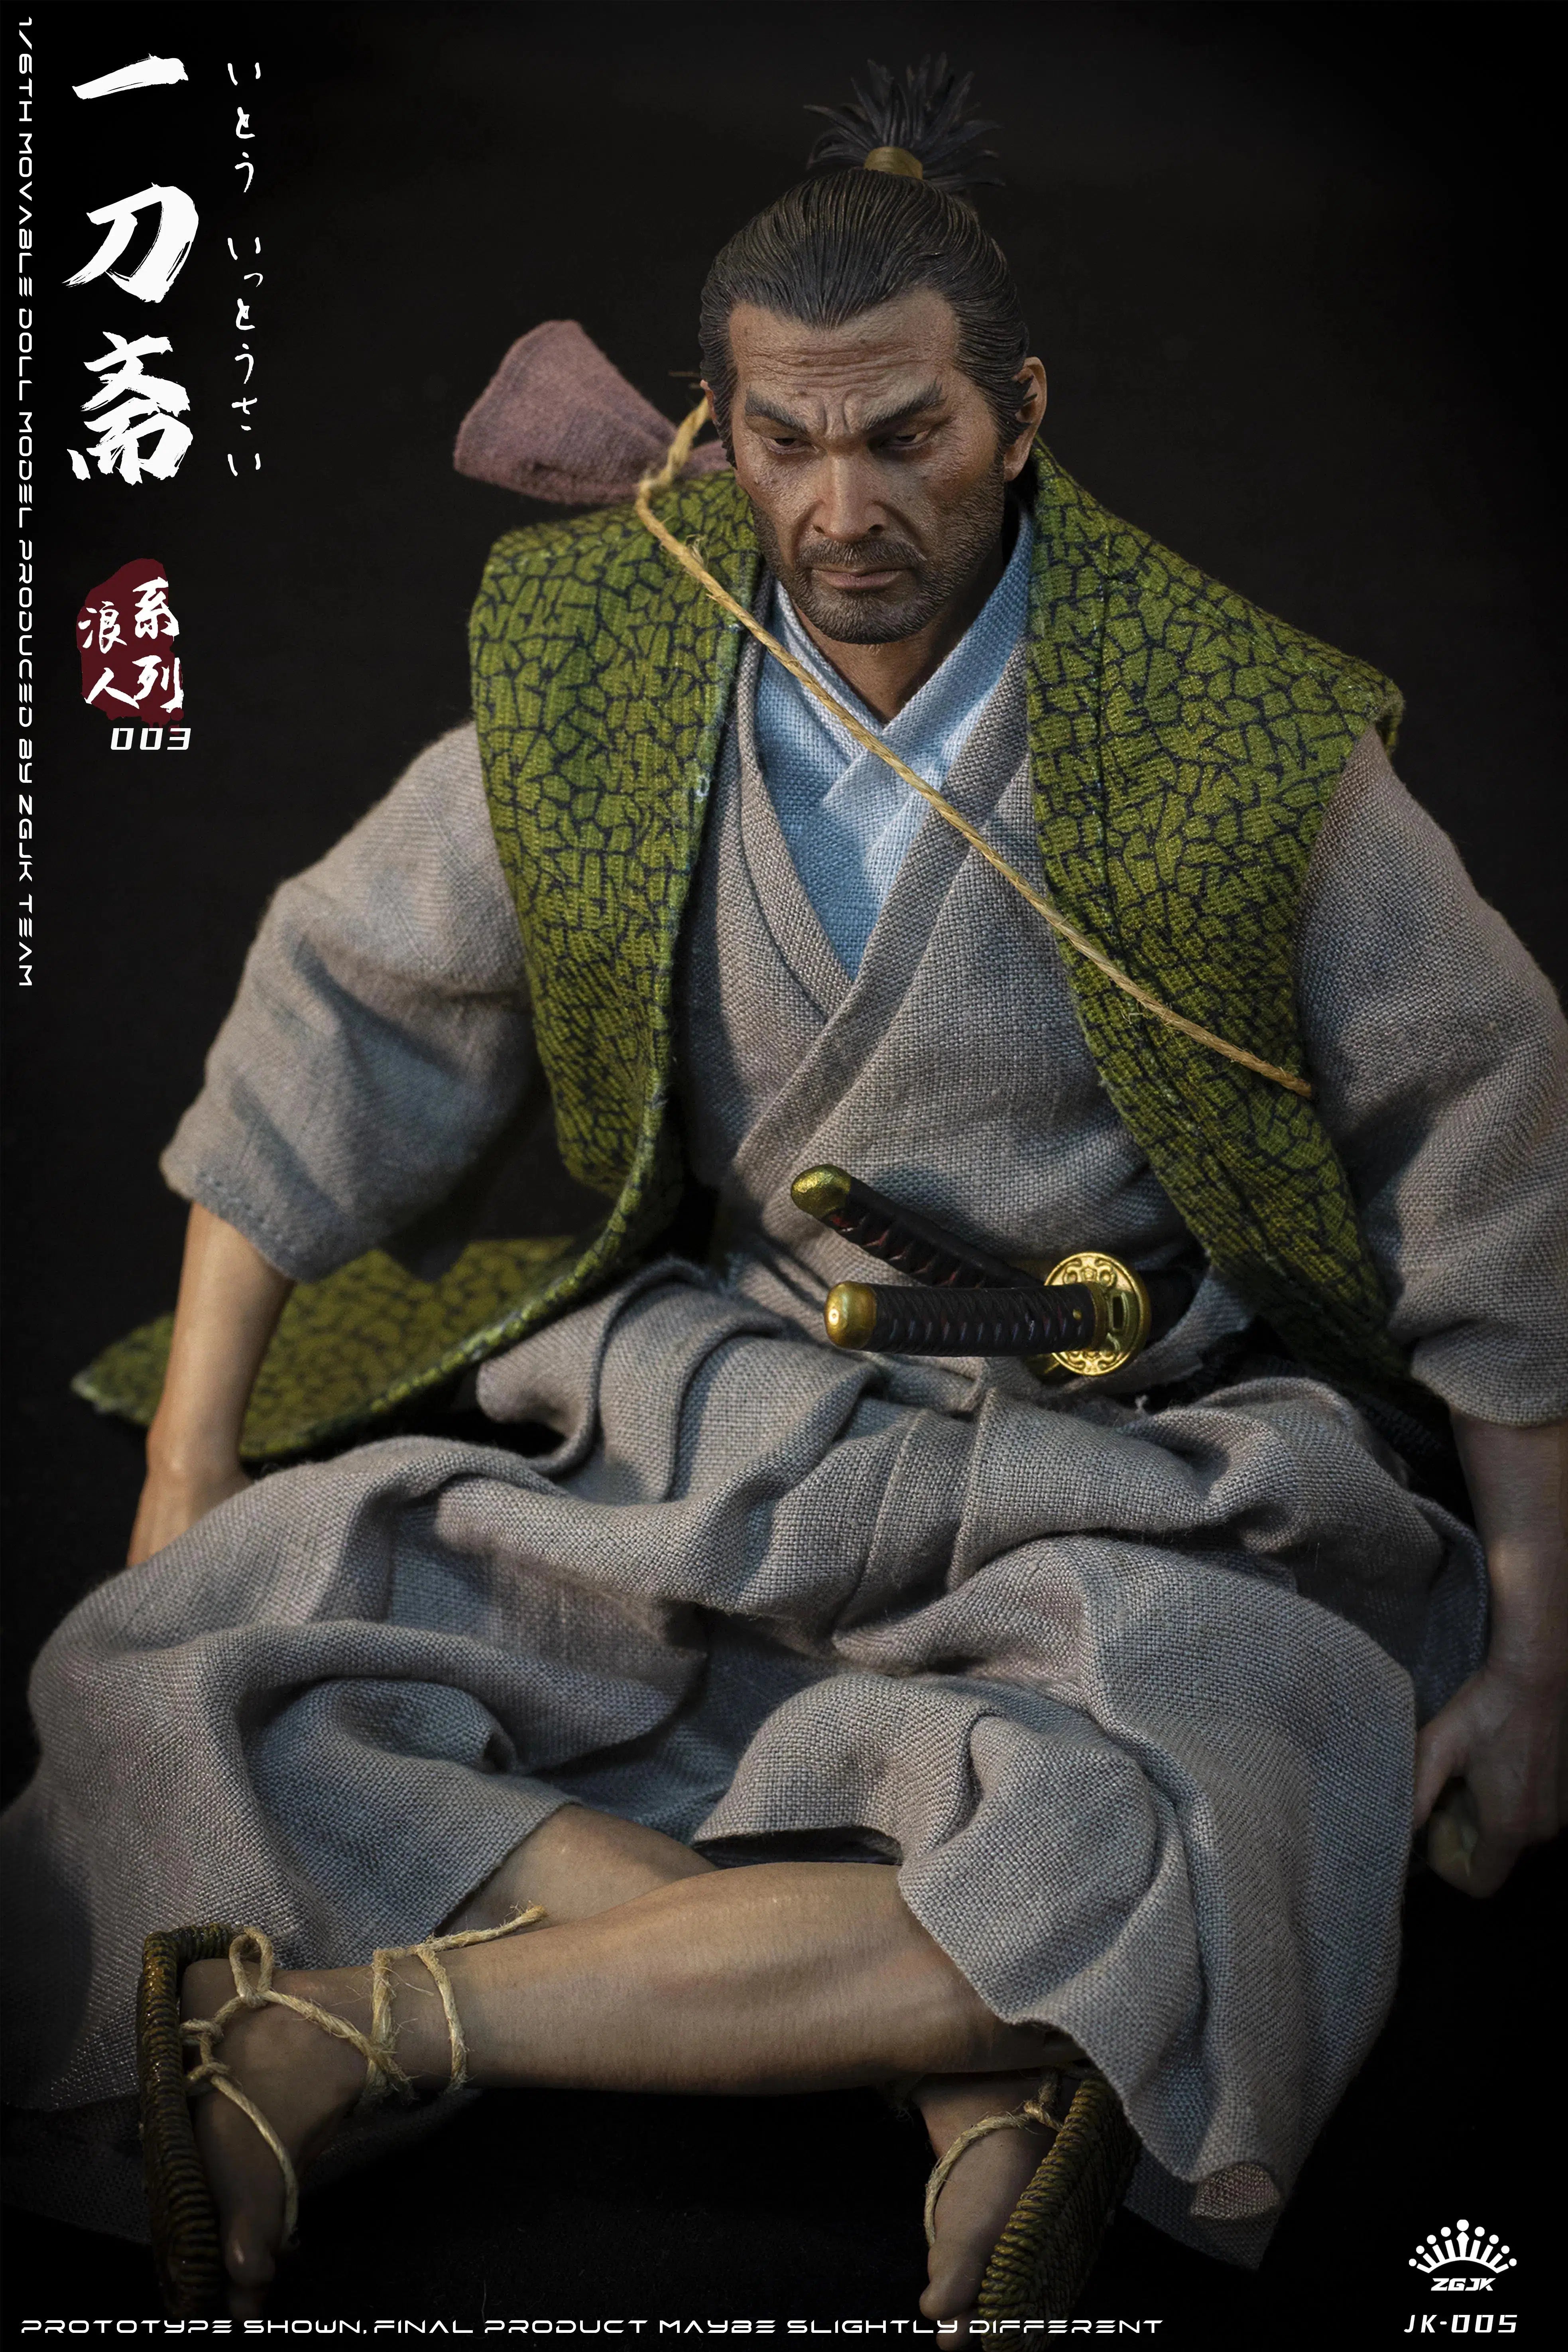 Ito Ittousai: Ronin Series: Sixth Scale Figure: ZGJKTOYS